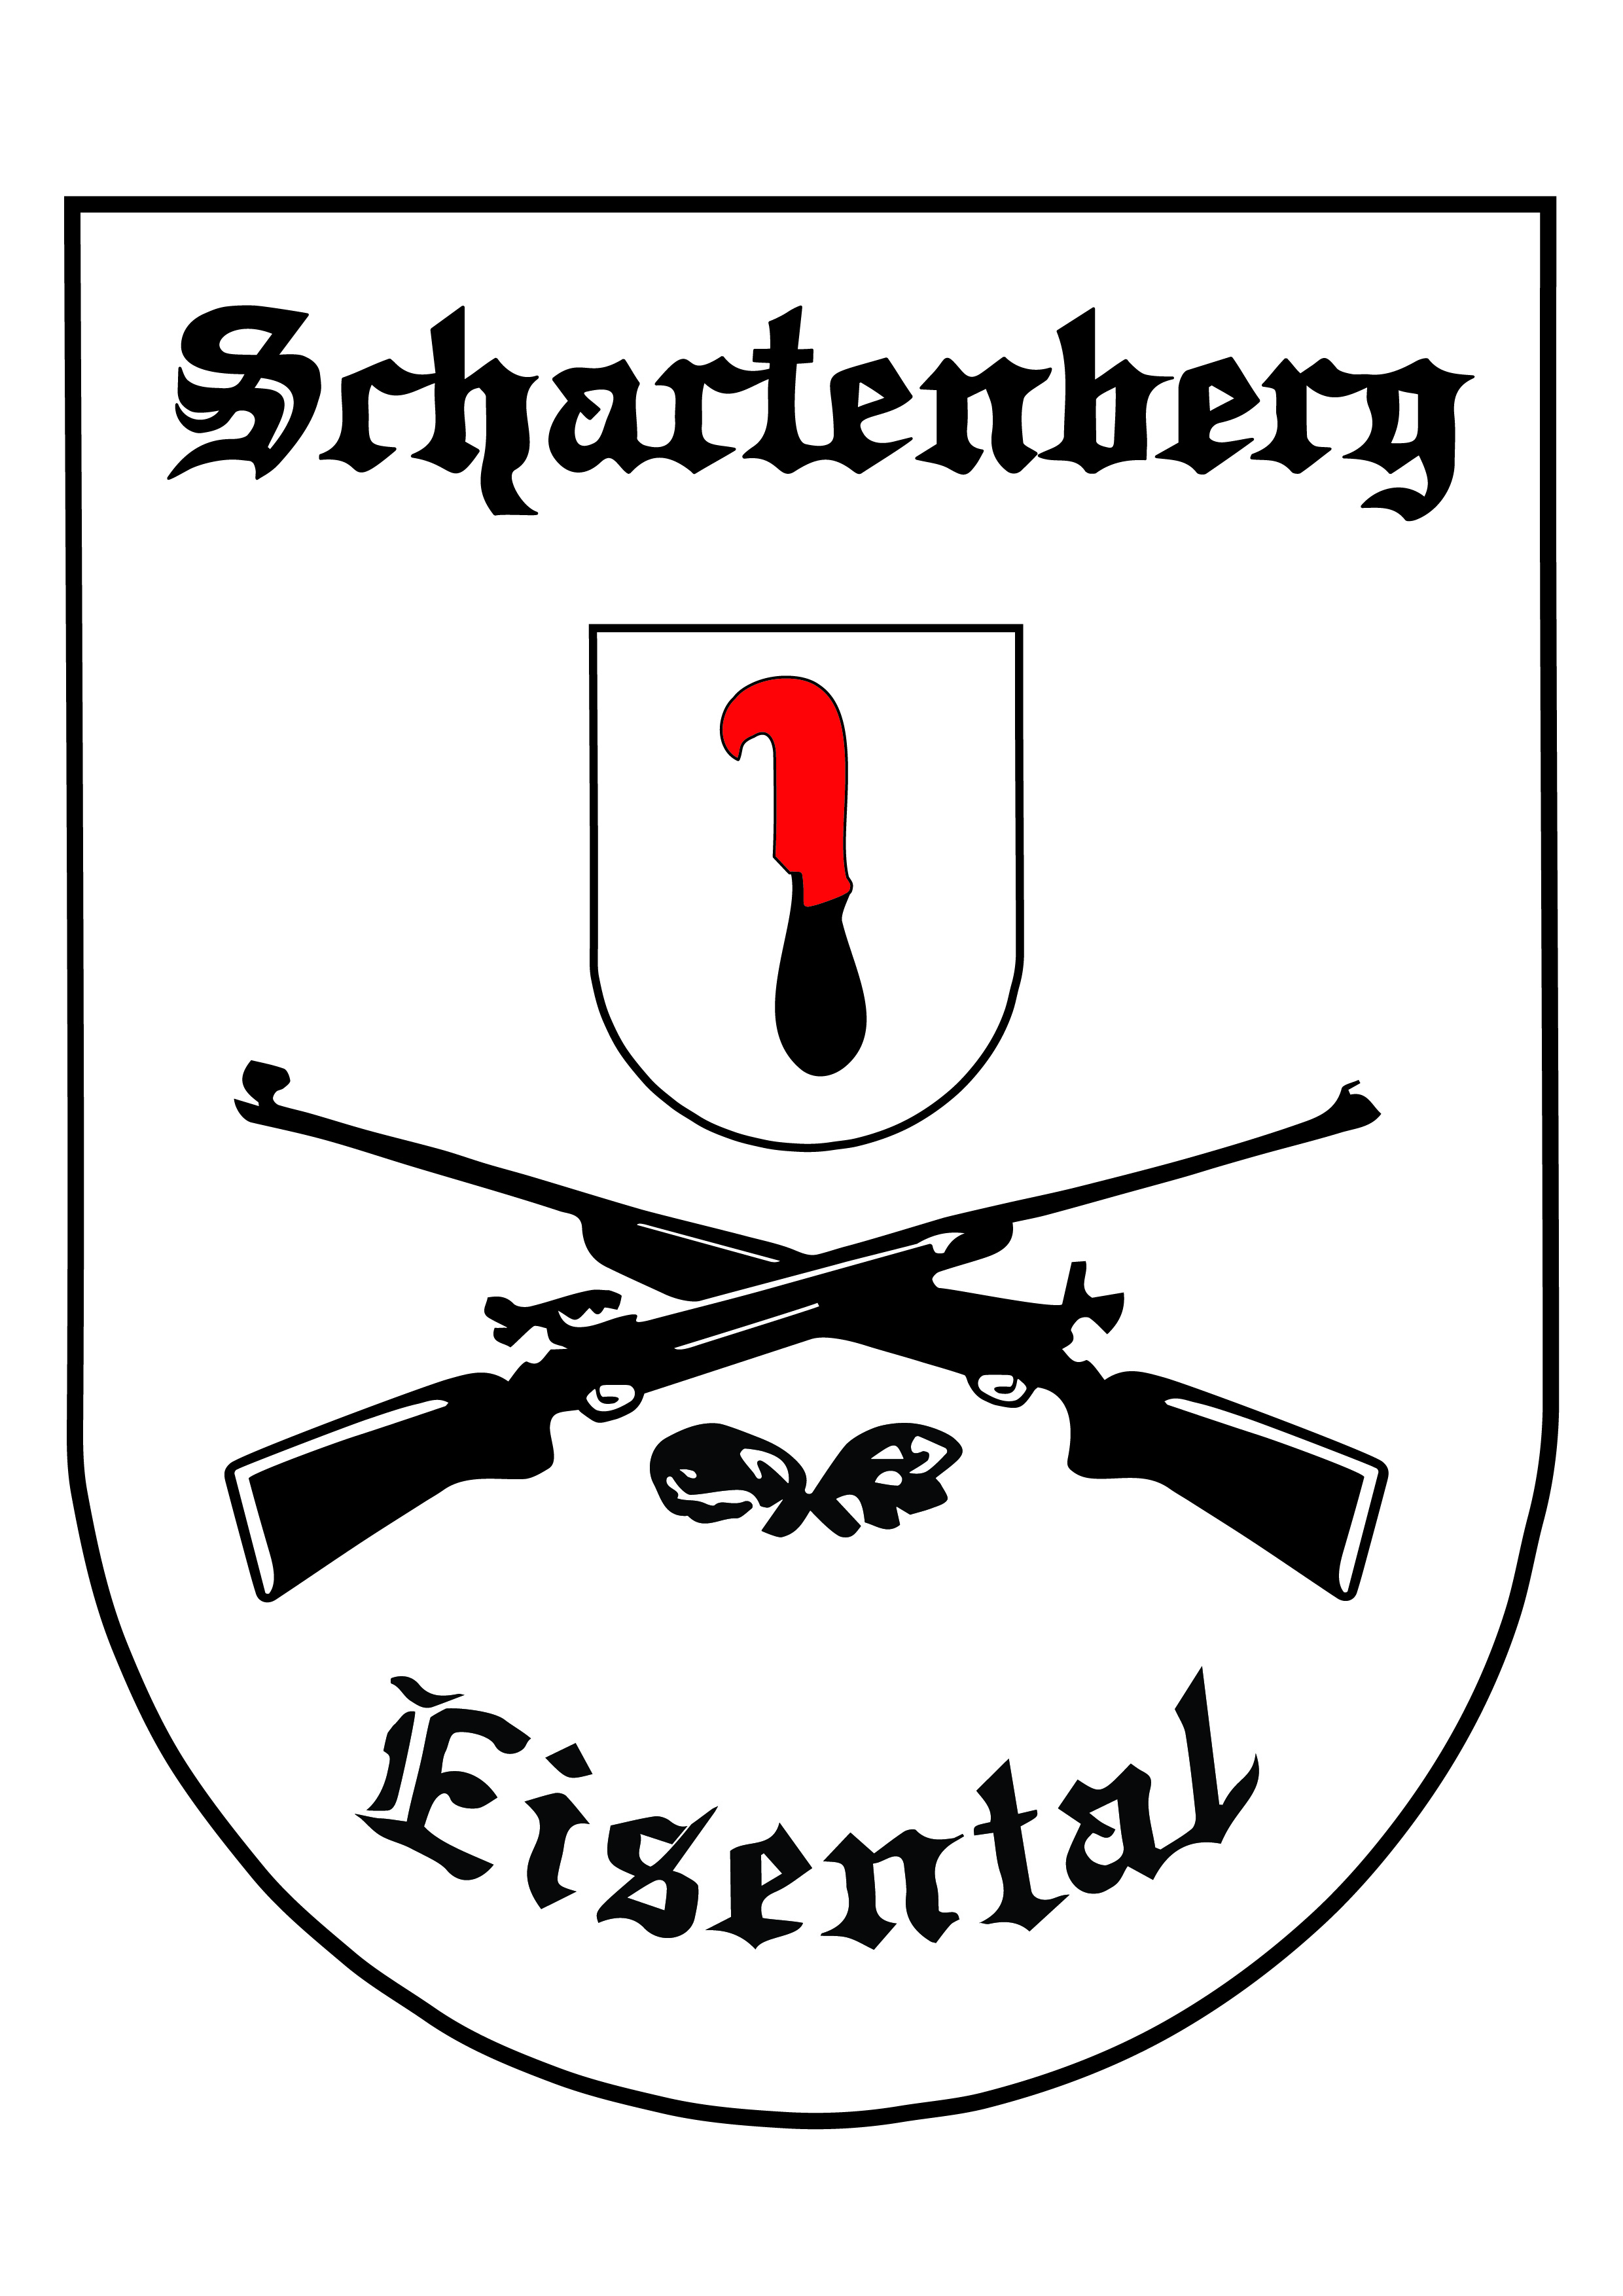 Schuetzenhaus Eisental Logo JPEG 300dpi white